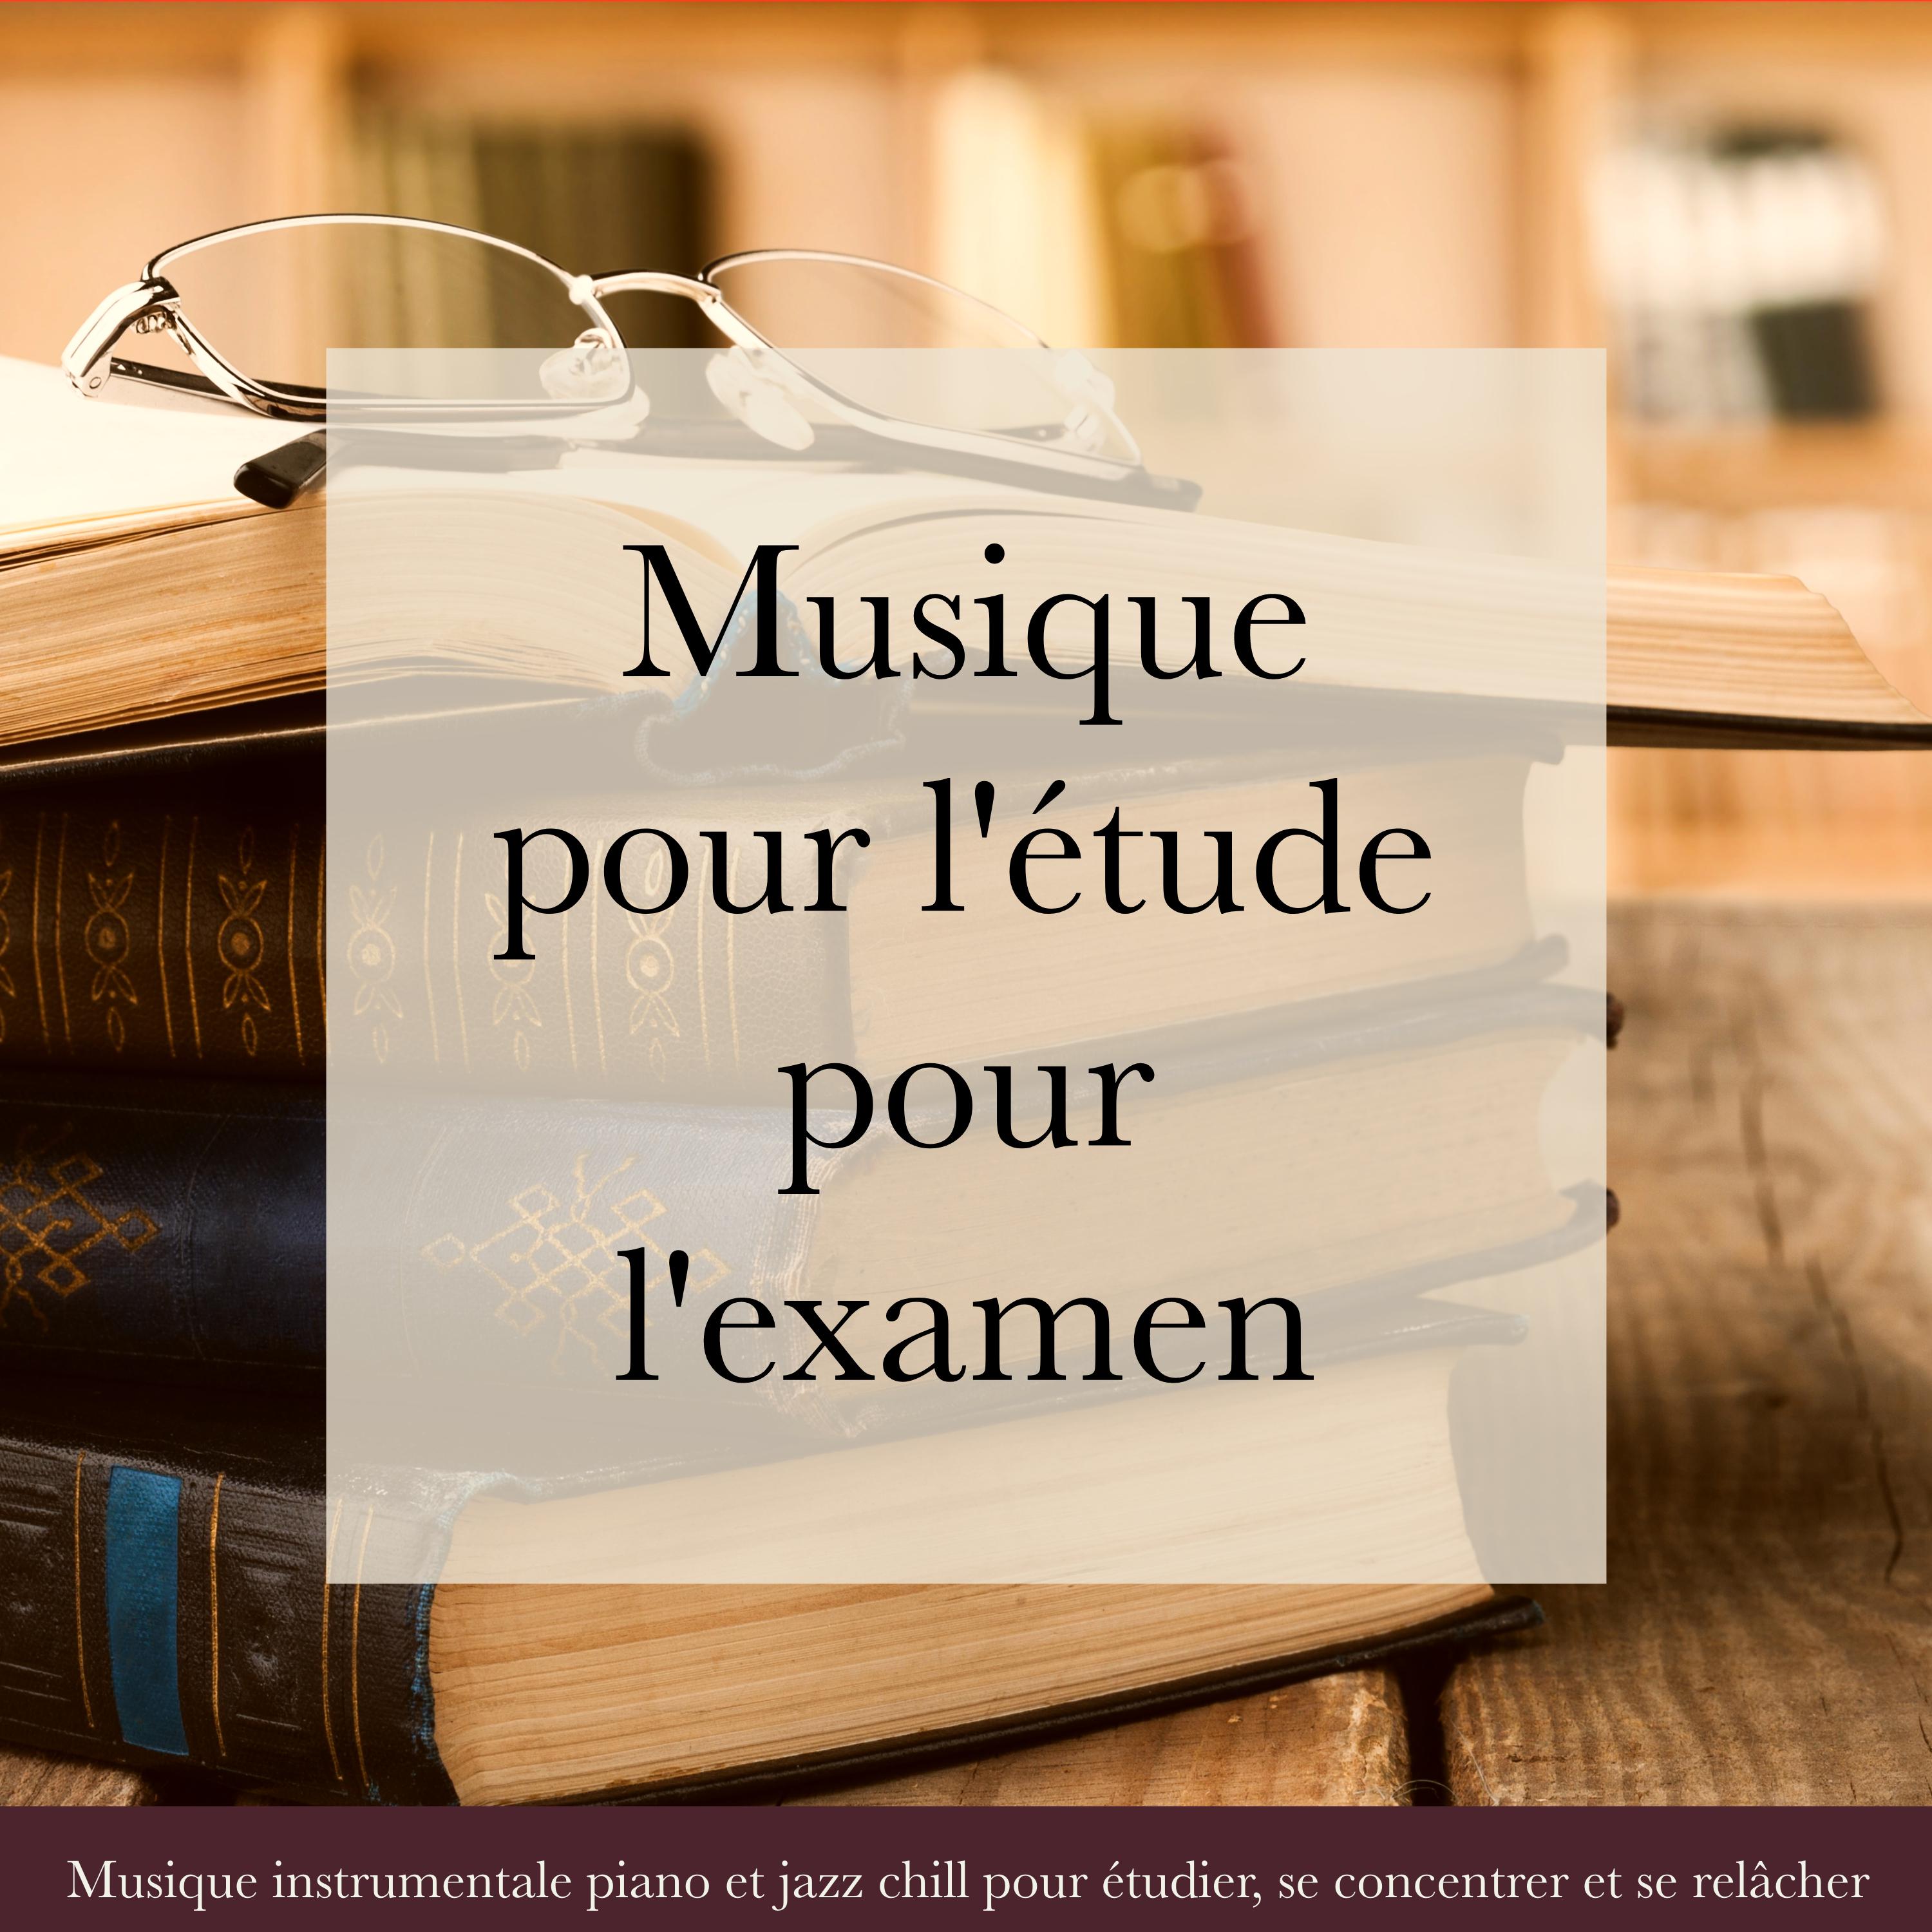 Musique pour l'e tude pour l' examen  Musique instrumentale piano et jazz chill pour e tudier, se concentrer et se rel cher